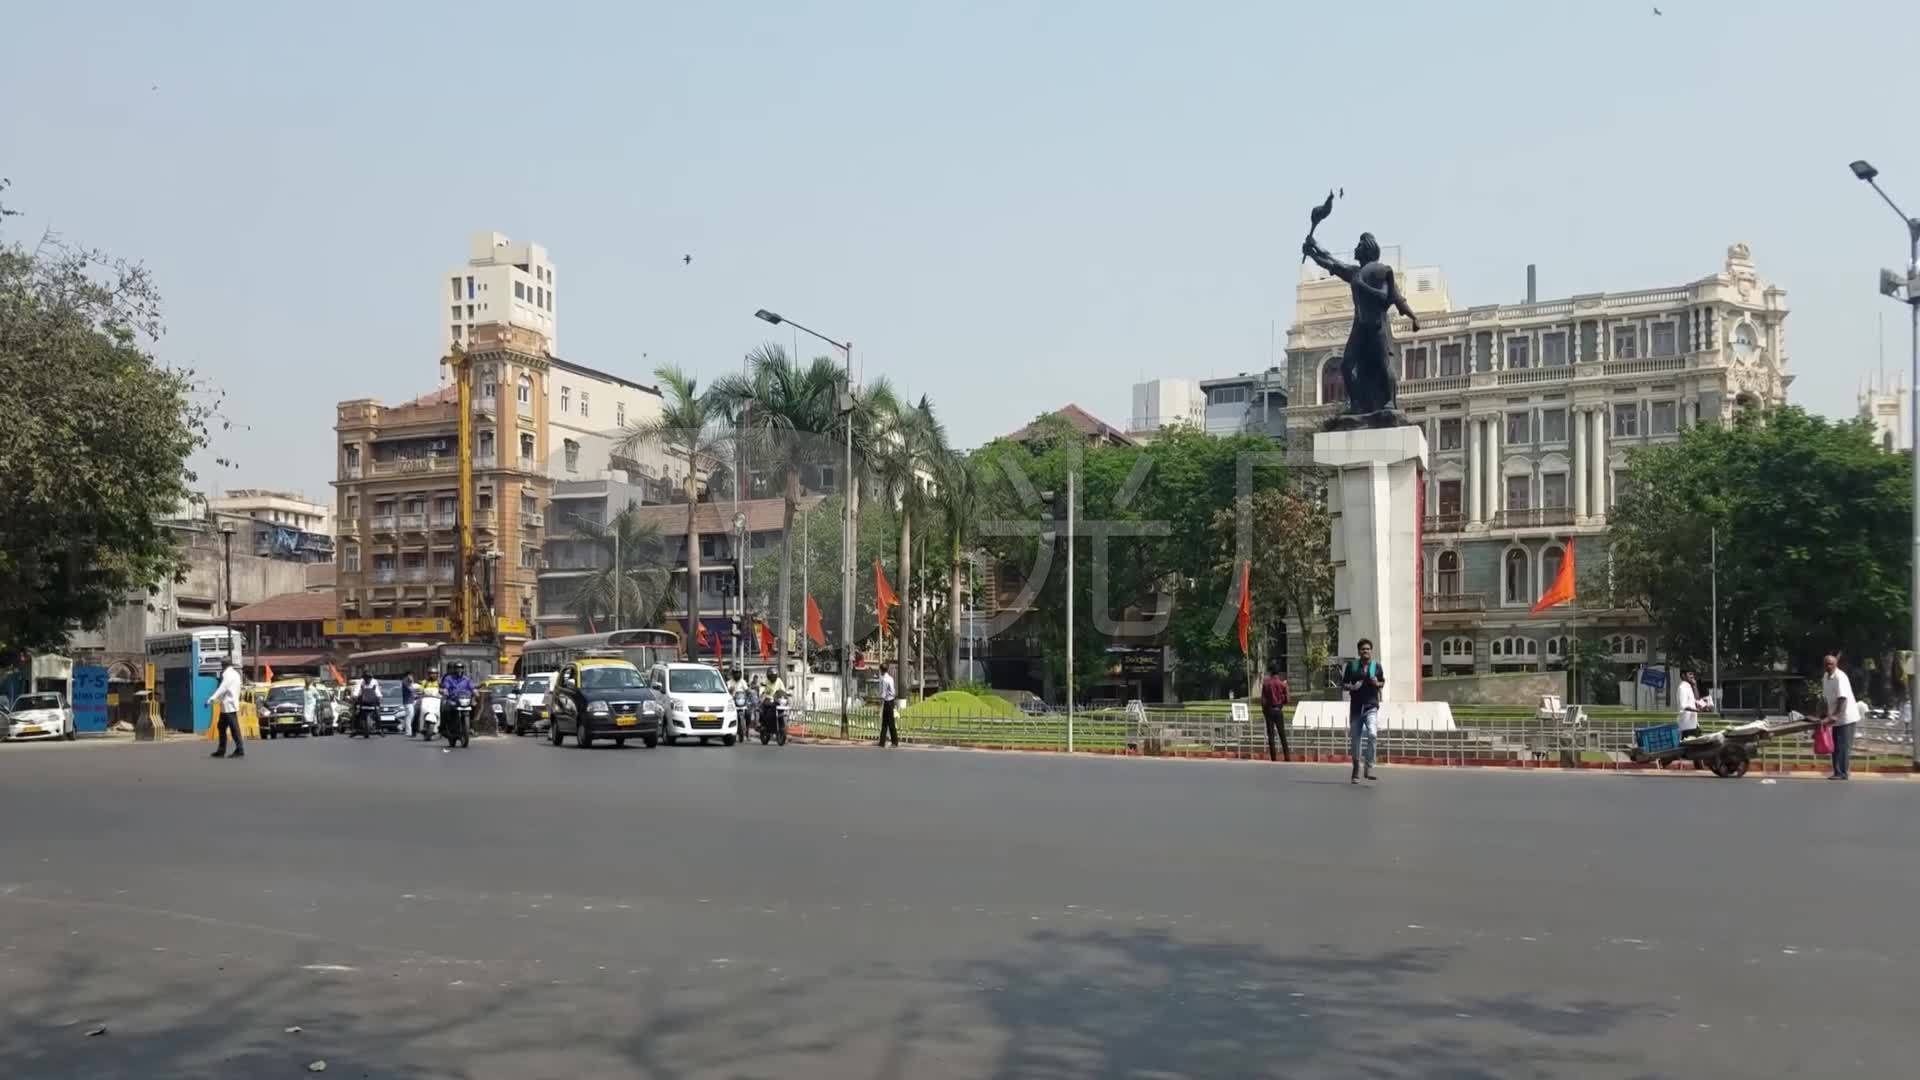 印度孟买市区街道广场沿岸钟楼浮雕古迹行人_1920x